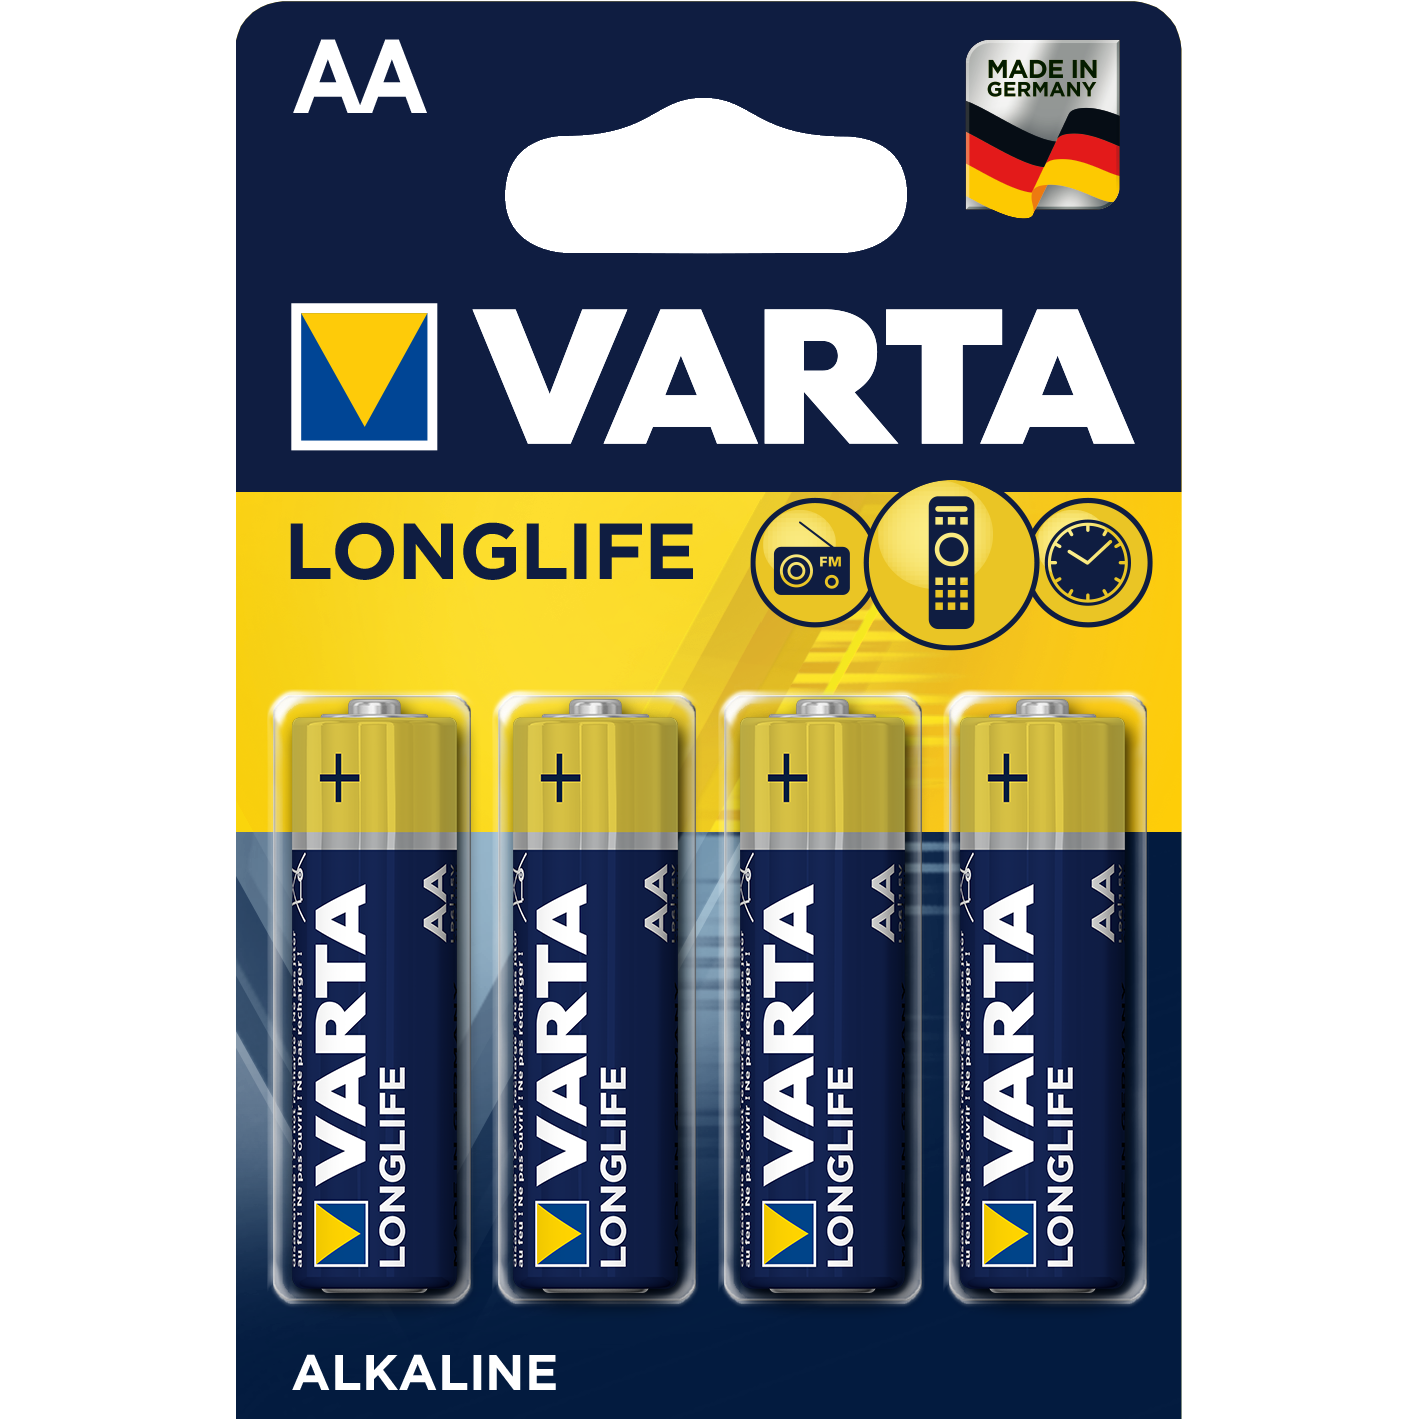 varta-longlife-batteries-aa-bulk-value-pack-80pcs